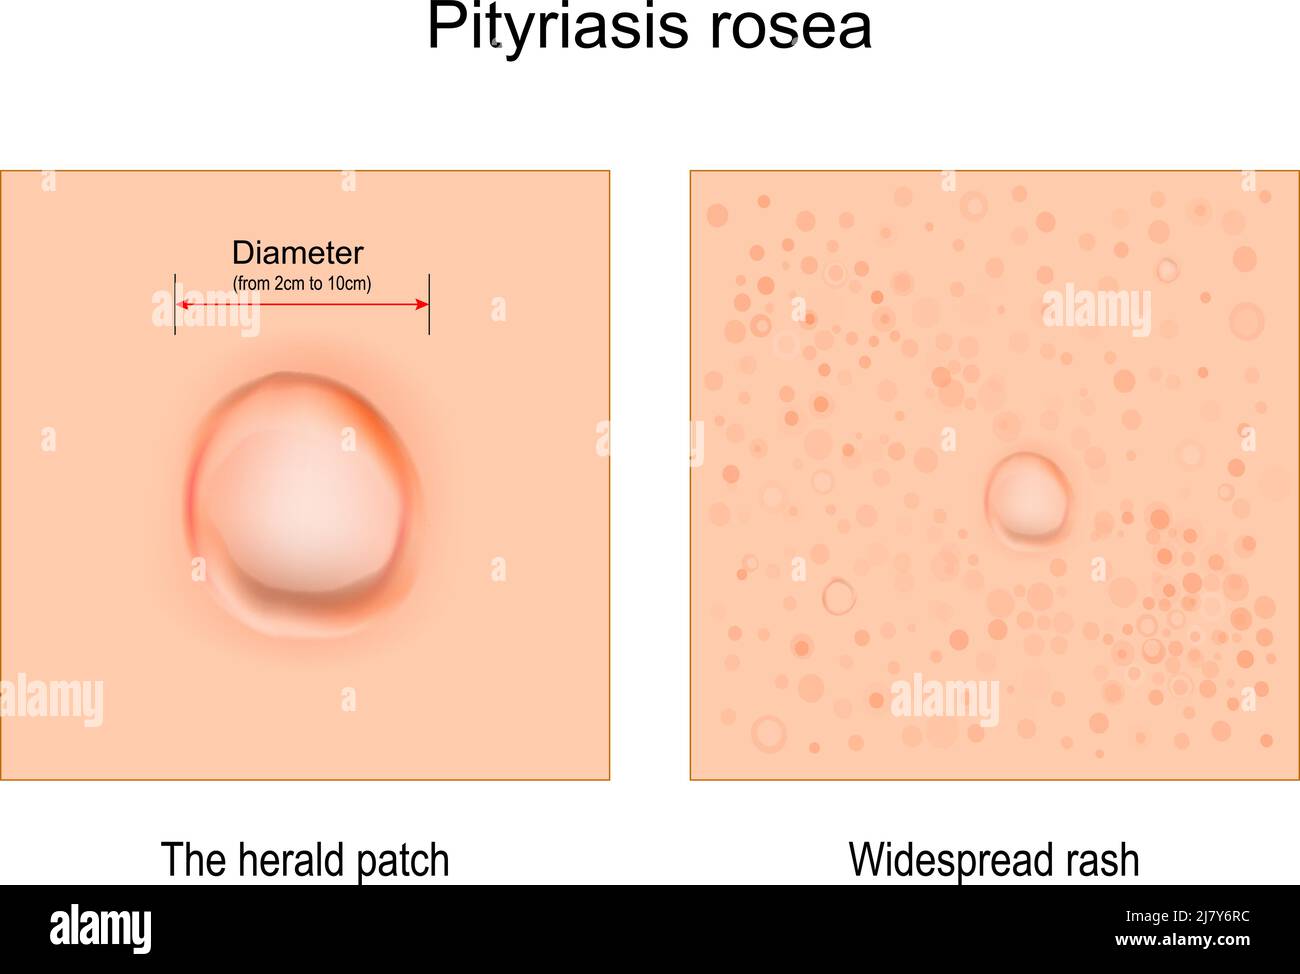 Pityriasis rosea. Nahaufnahme von Hautausschlag. Anzeichen und Symptome. Der Herold Patch und weit verbreitete Ausschlag. vektor-Illustration Stock Vektor